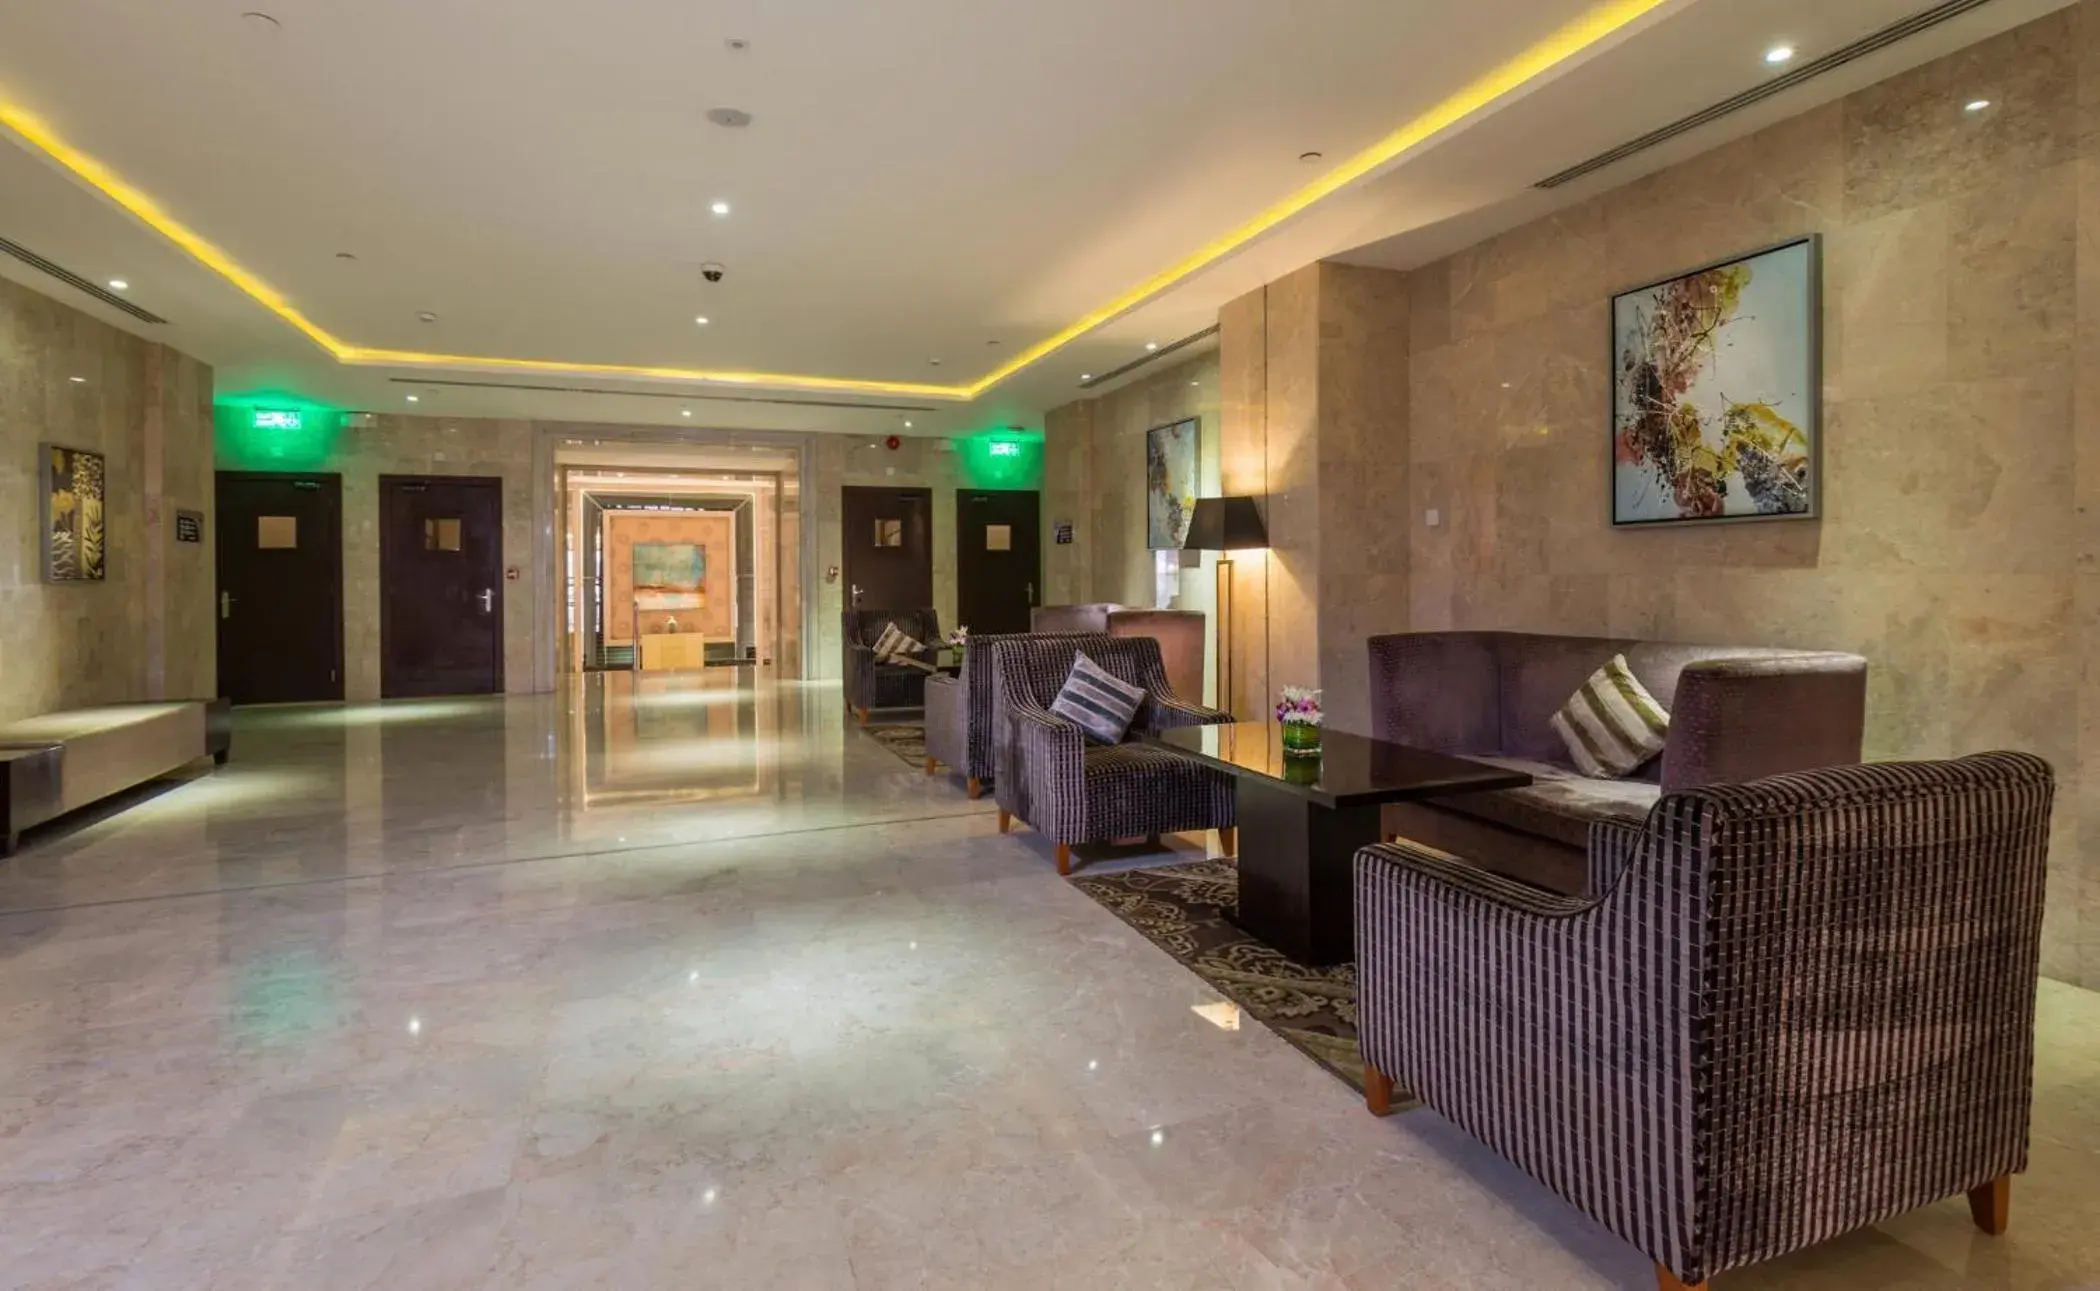 Lobby or reception, Lobby/Reception in Boudl Al Qasr